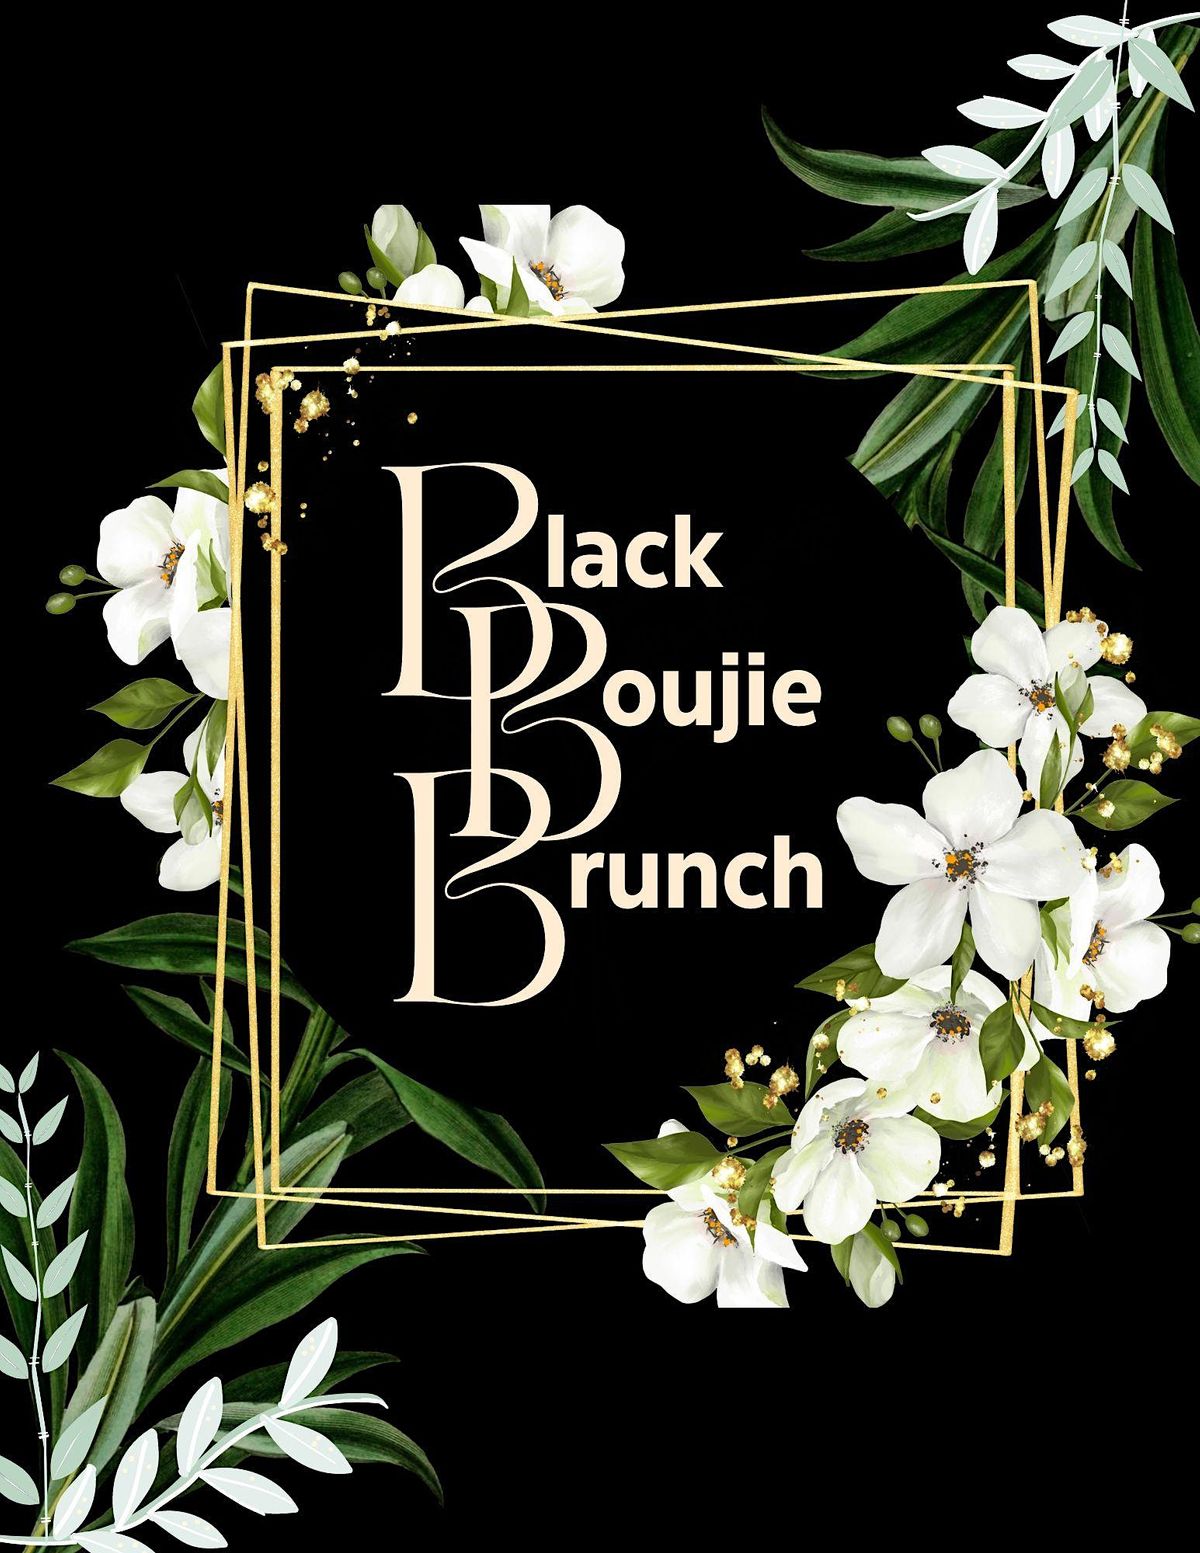 Black Boujie Brunch: Garden Party